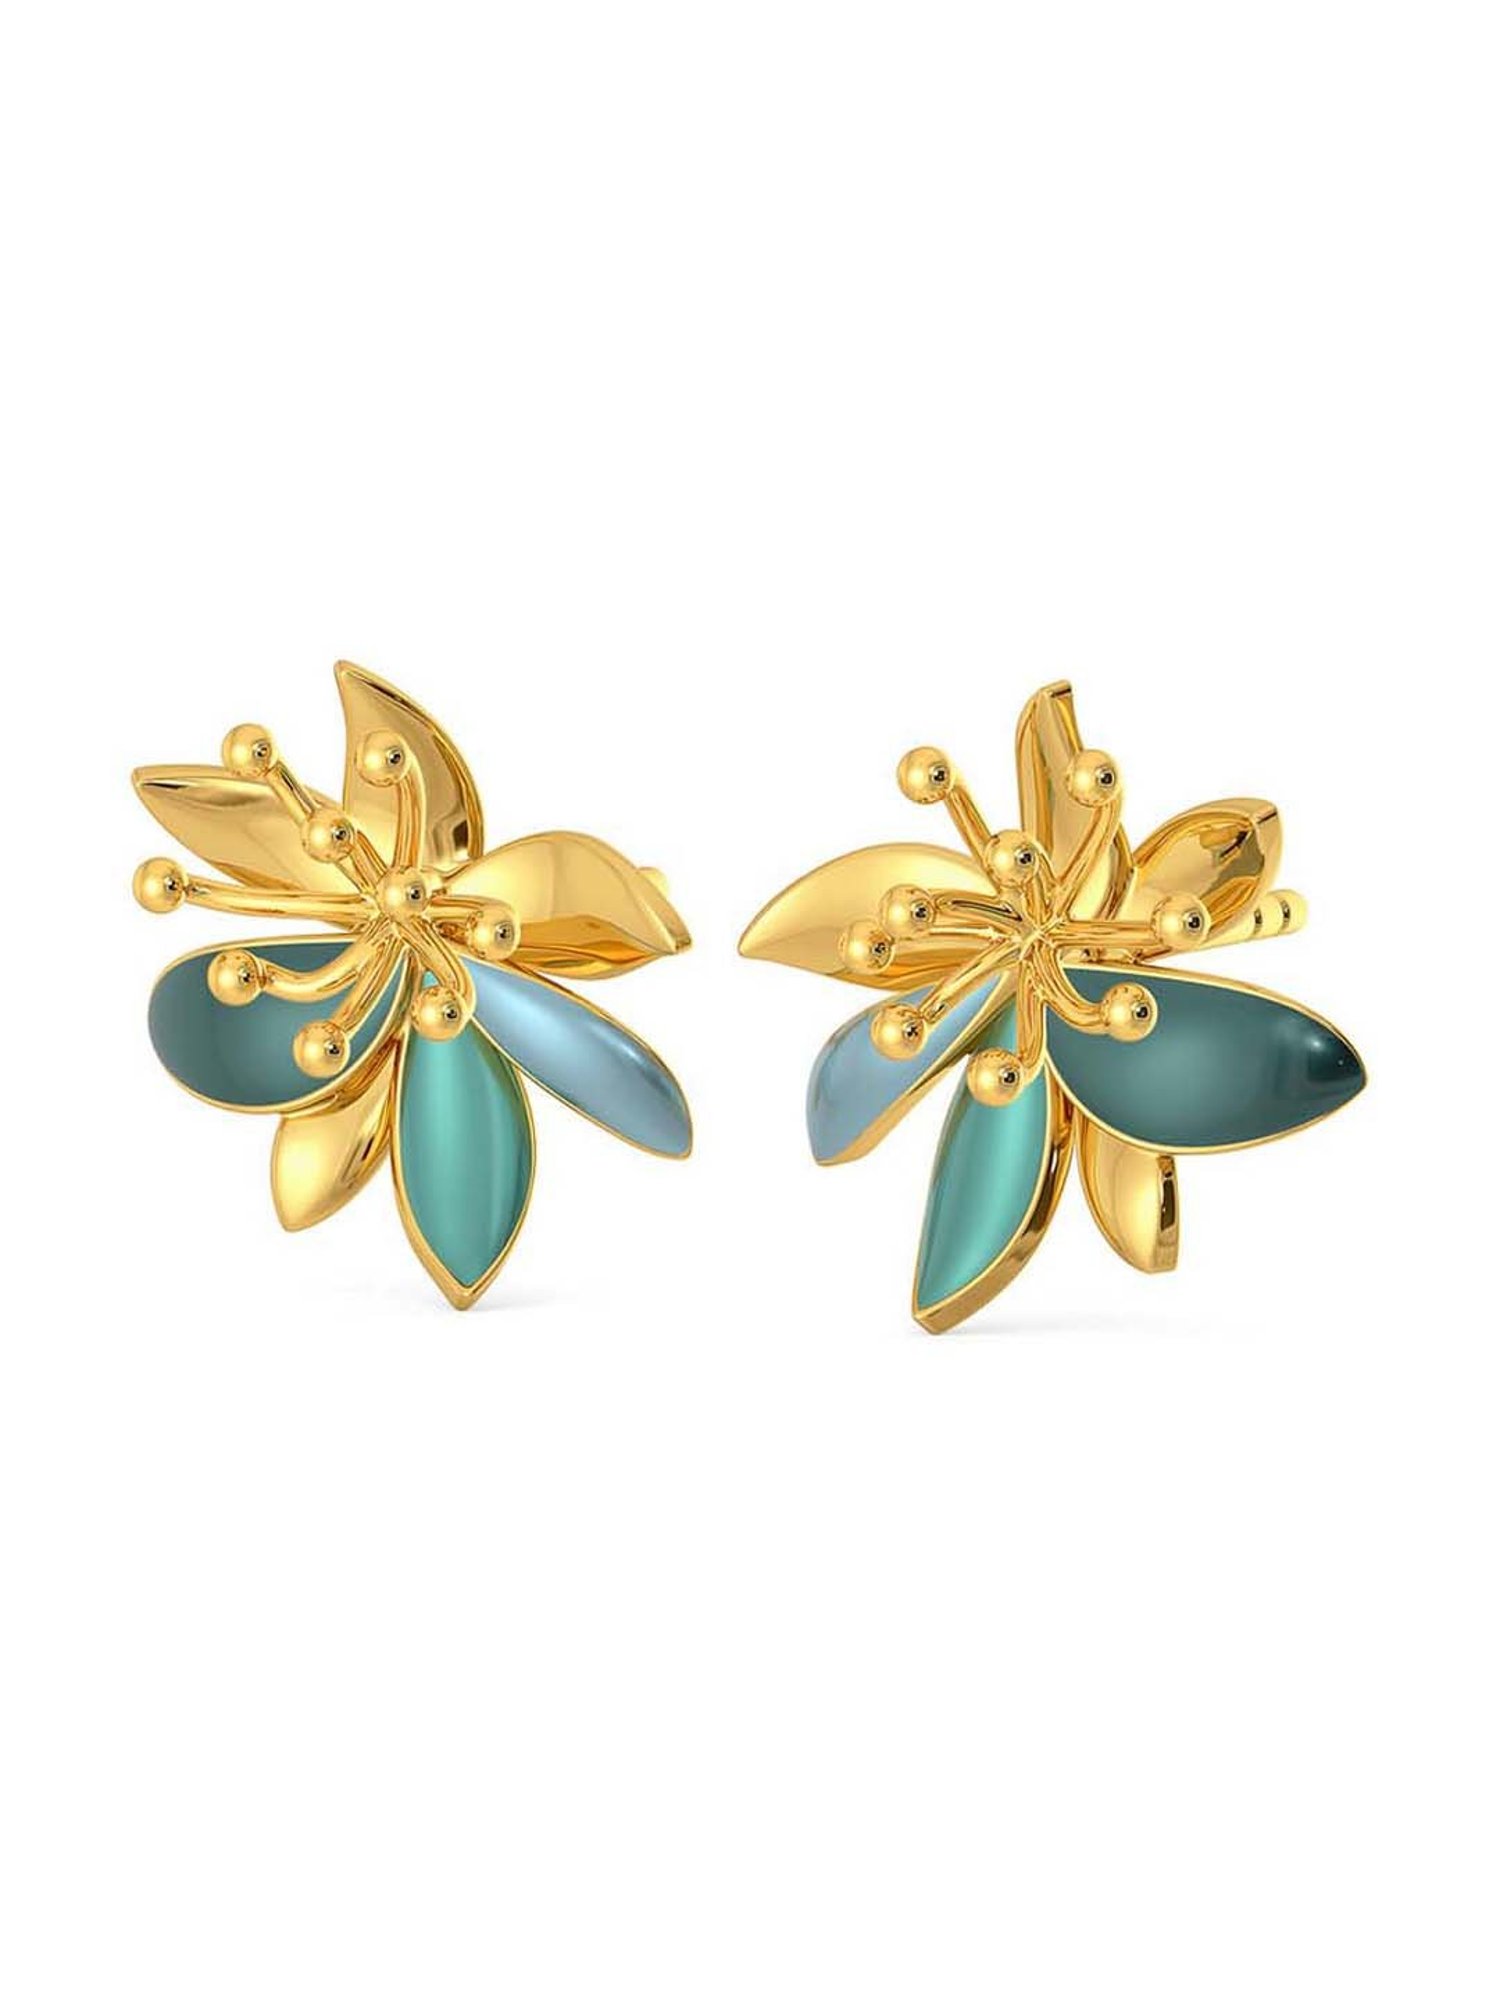 Buy Yellow Gold Earrings for Women by Melorra Online  Ajiocom